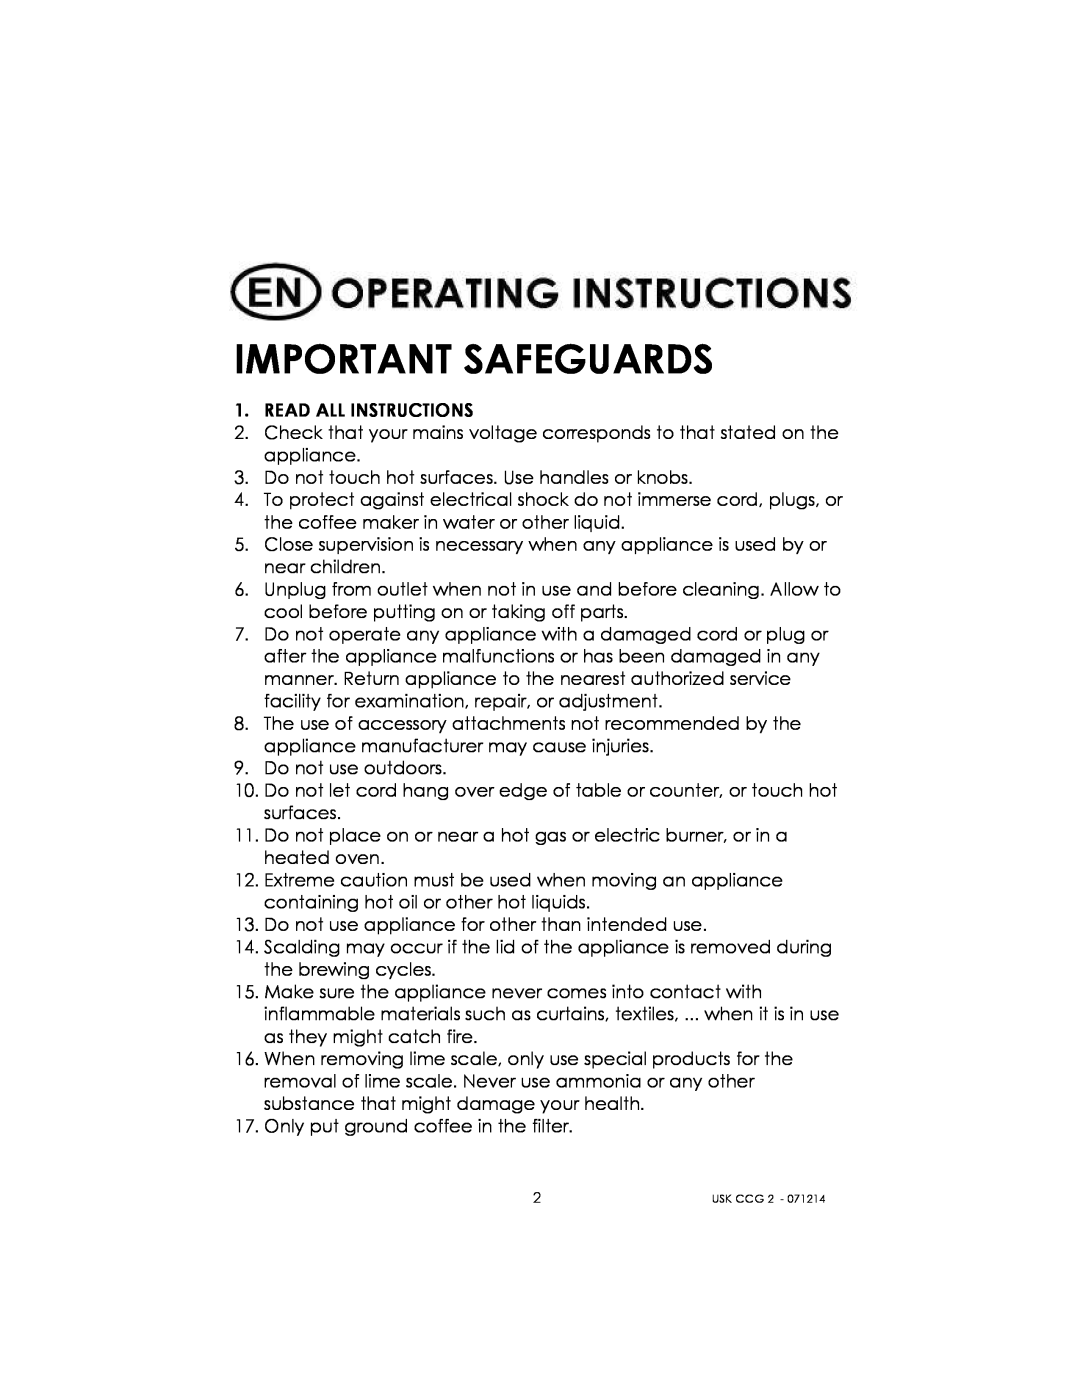 Kalorik USK CCG 2 manual Important Safeguards 